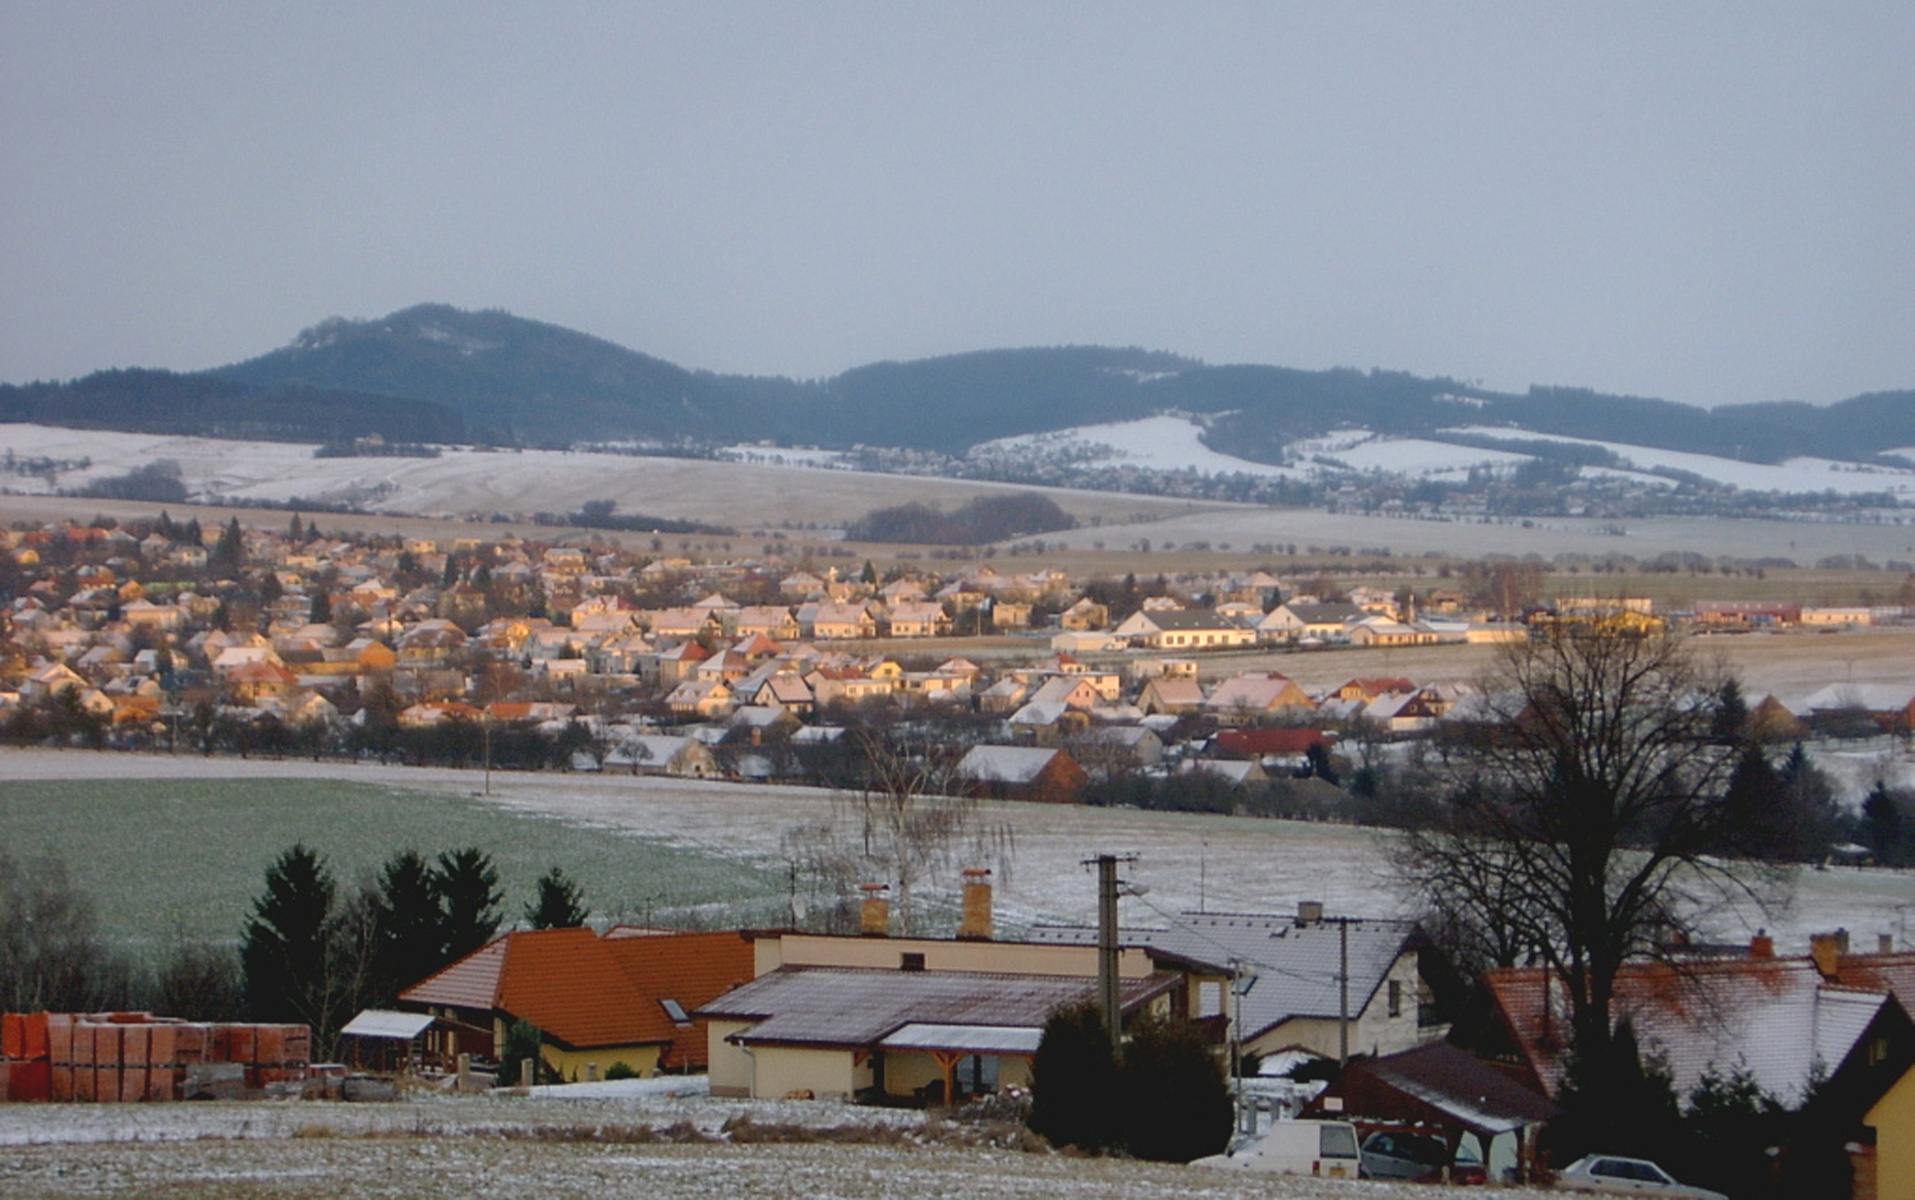 Vesnice v zimě